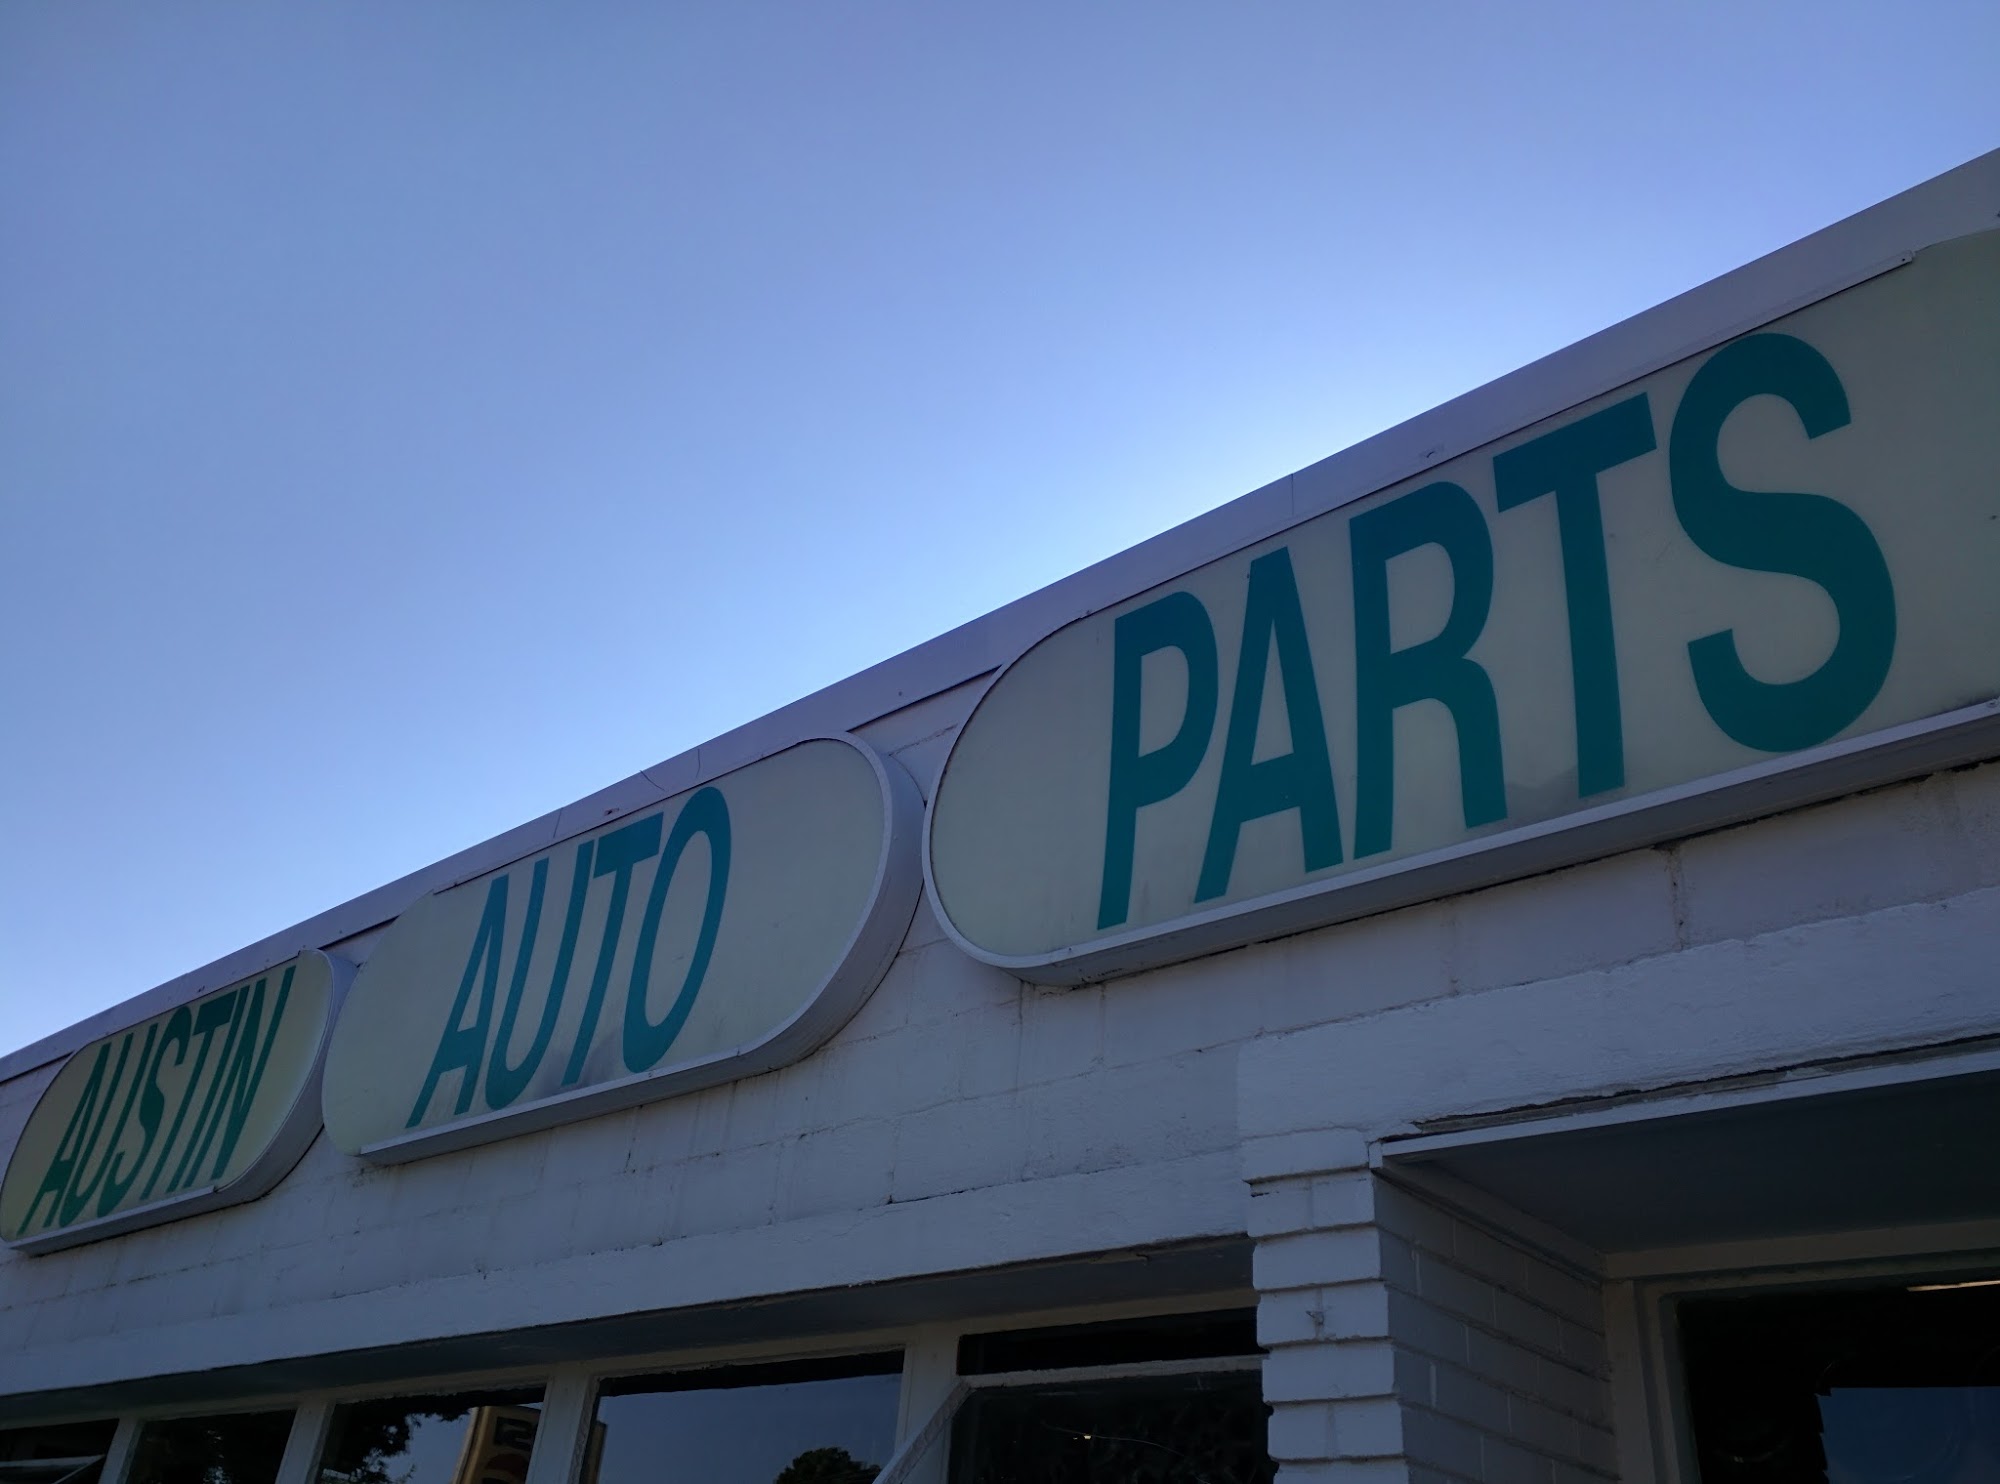 Austin Auto Parts